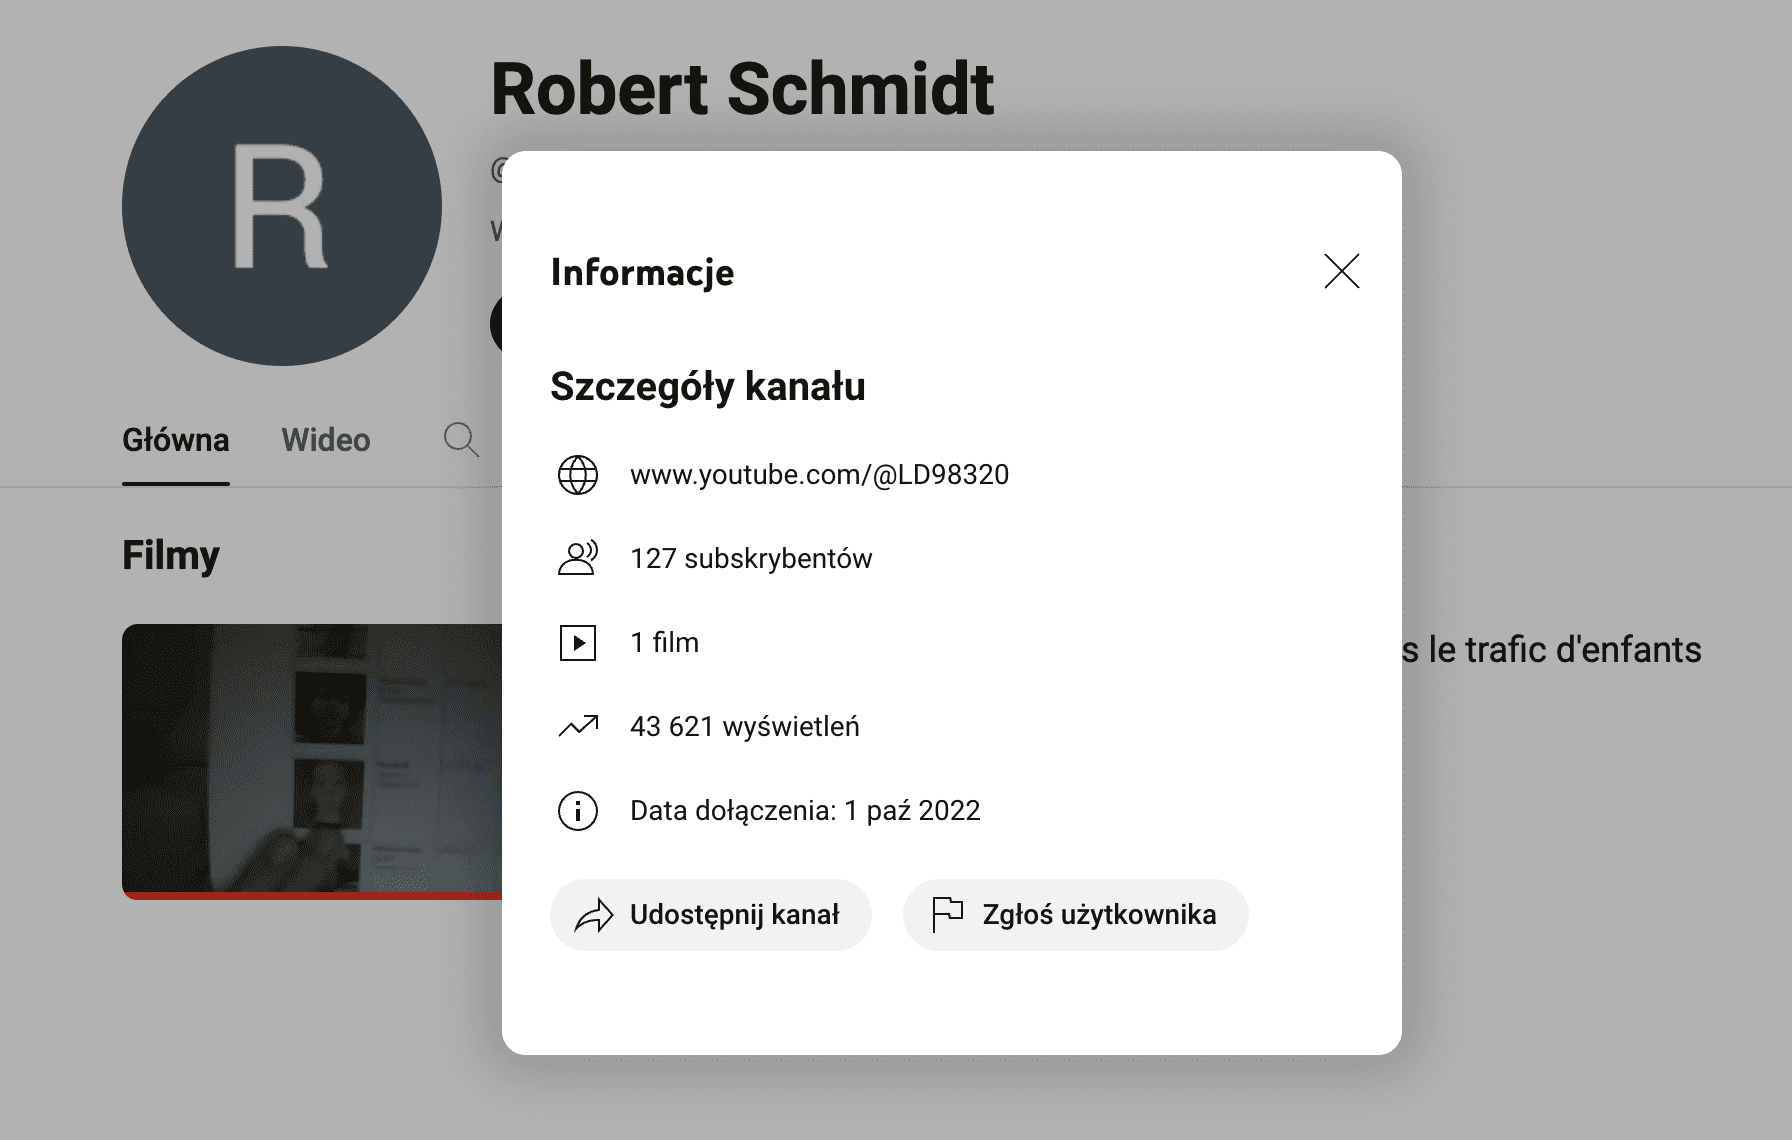 Zrzut ekranu z YouTube’a. Na zdjęciu widać dane na temat konta Roberta Schmidta.